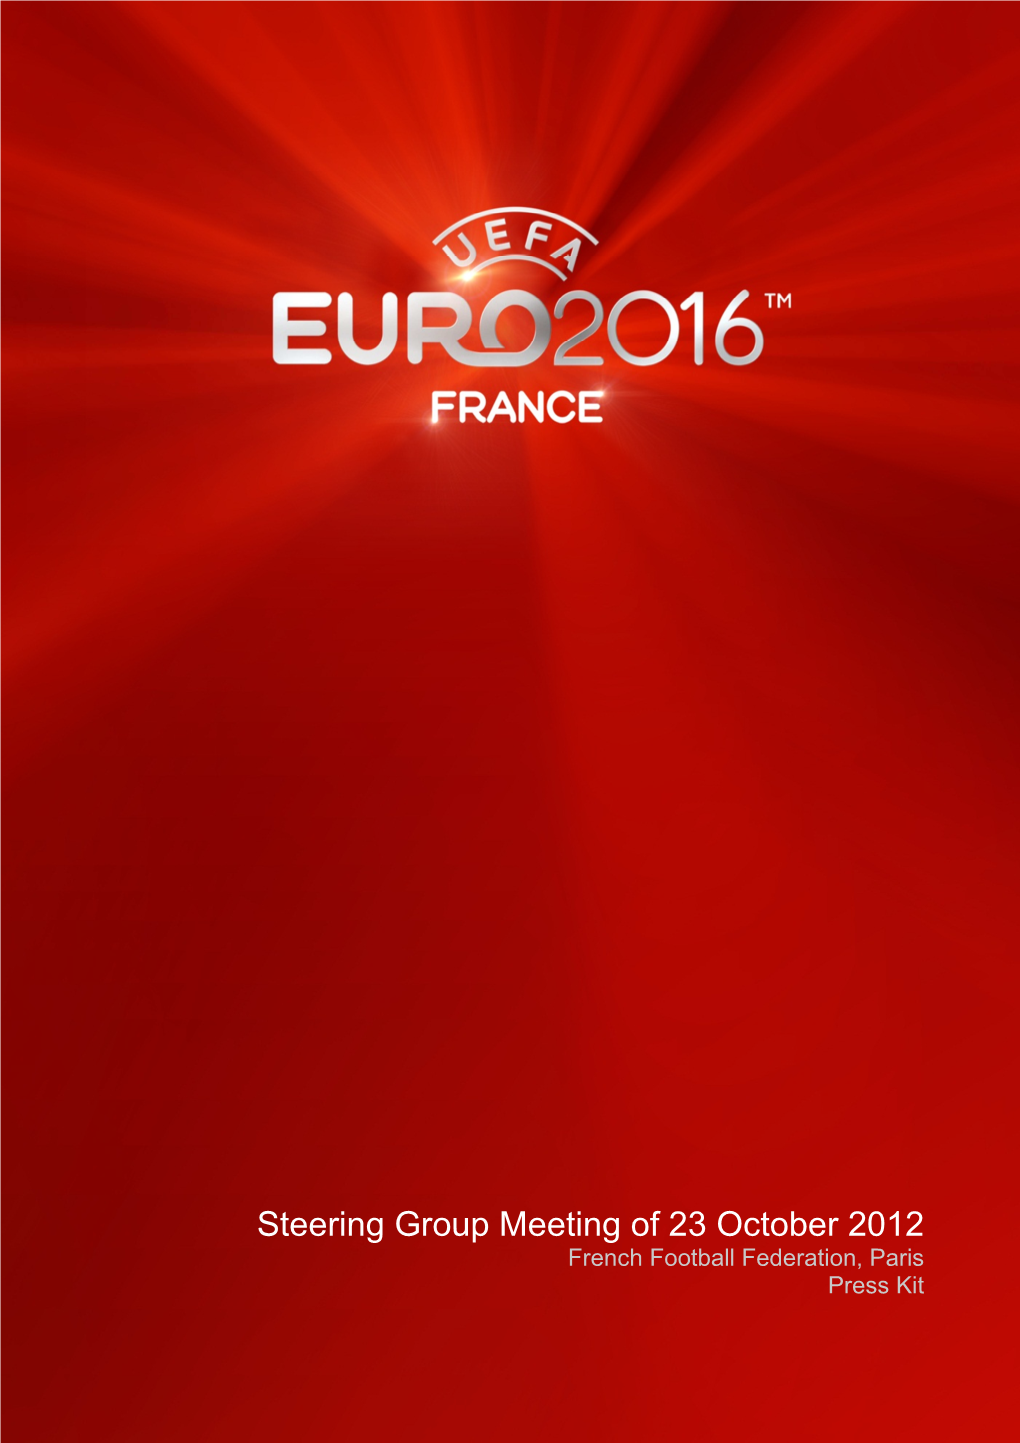 UEFA EURO 2016 Steering Group Meeting